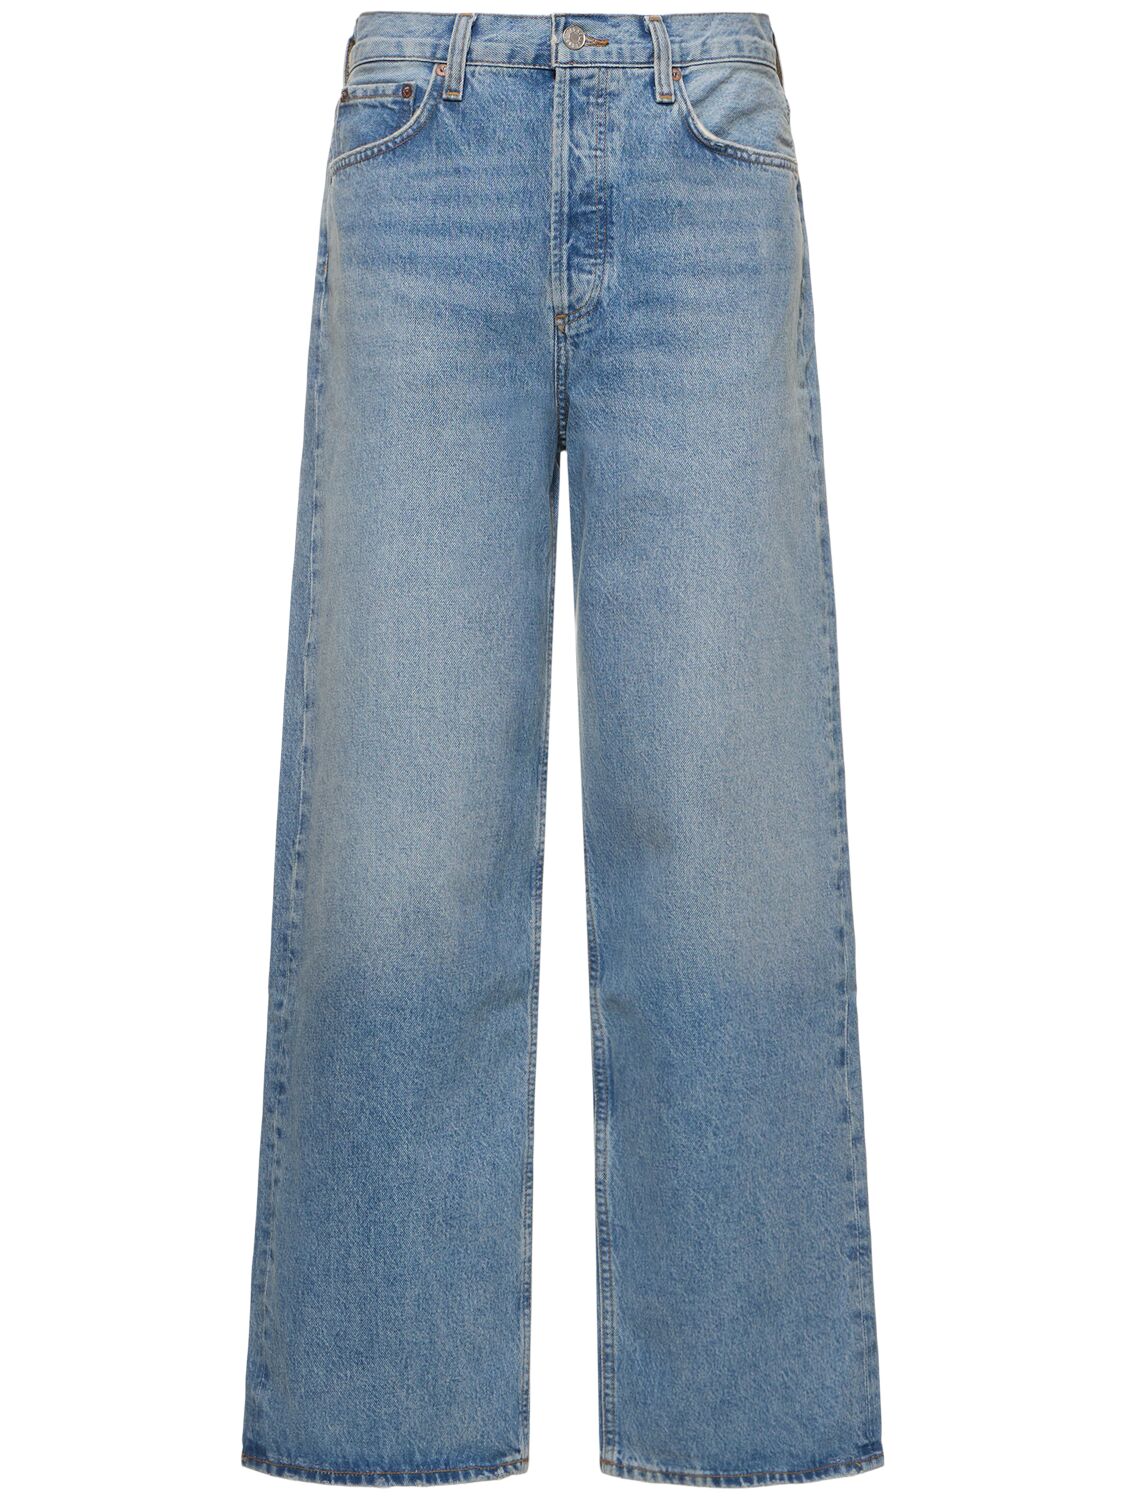 Image of Low Slung Cotton Blend Baggy Jeans